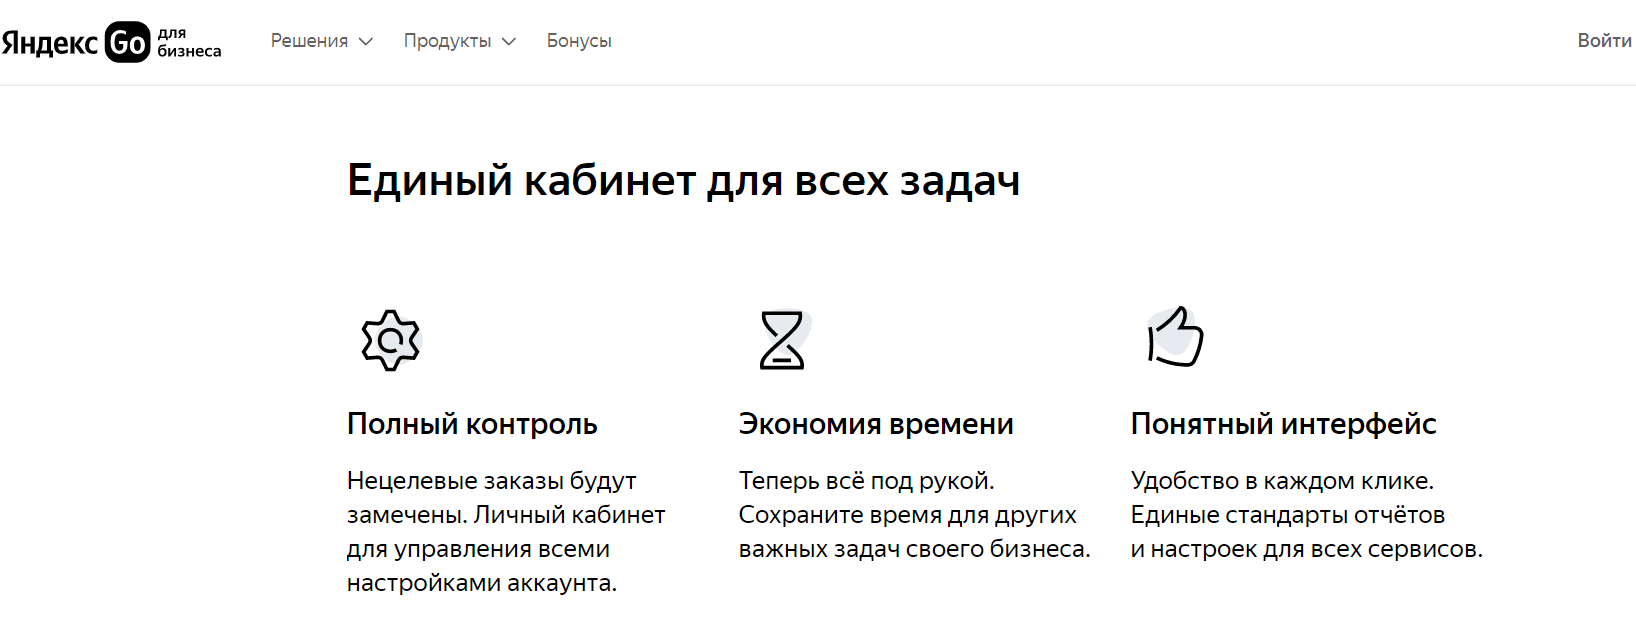 Яндекс Go для бизнеса преимущества личного кабинета